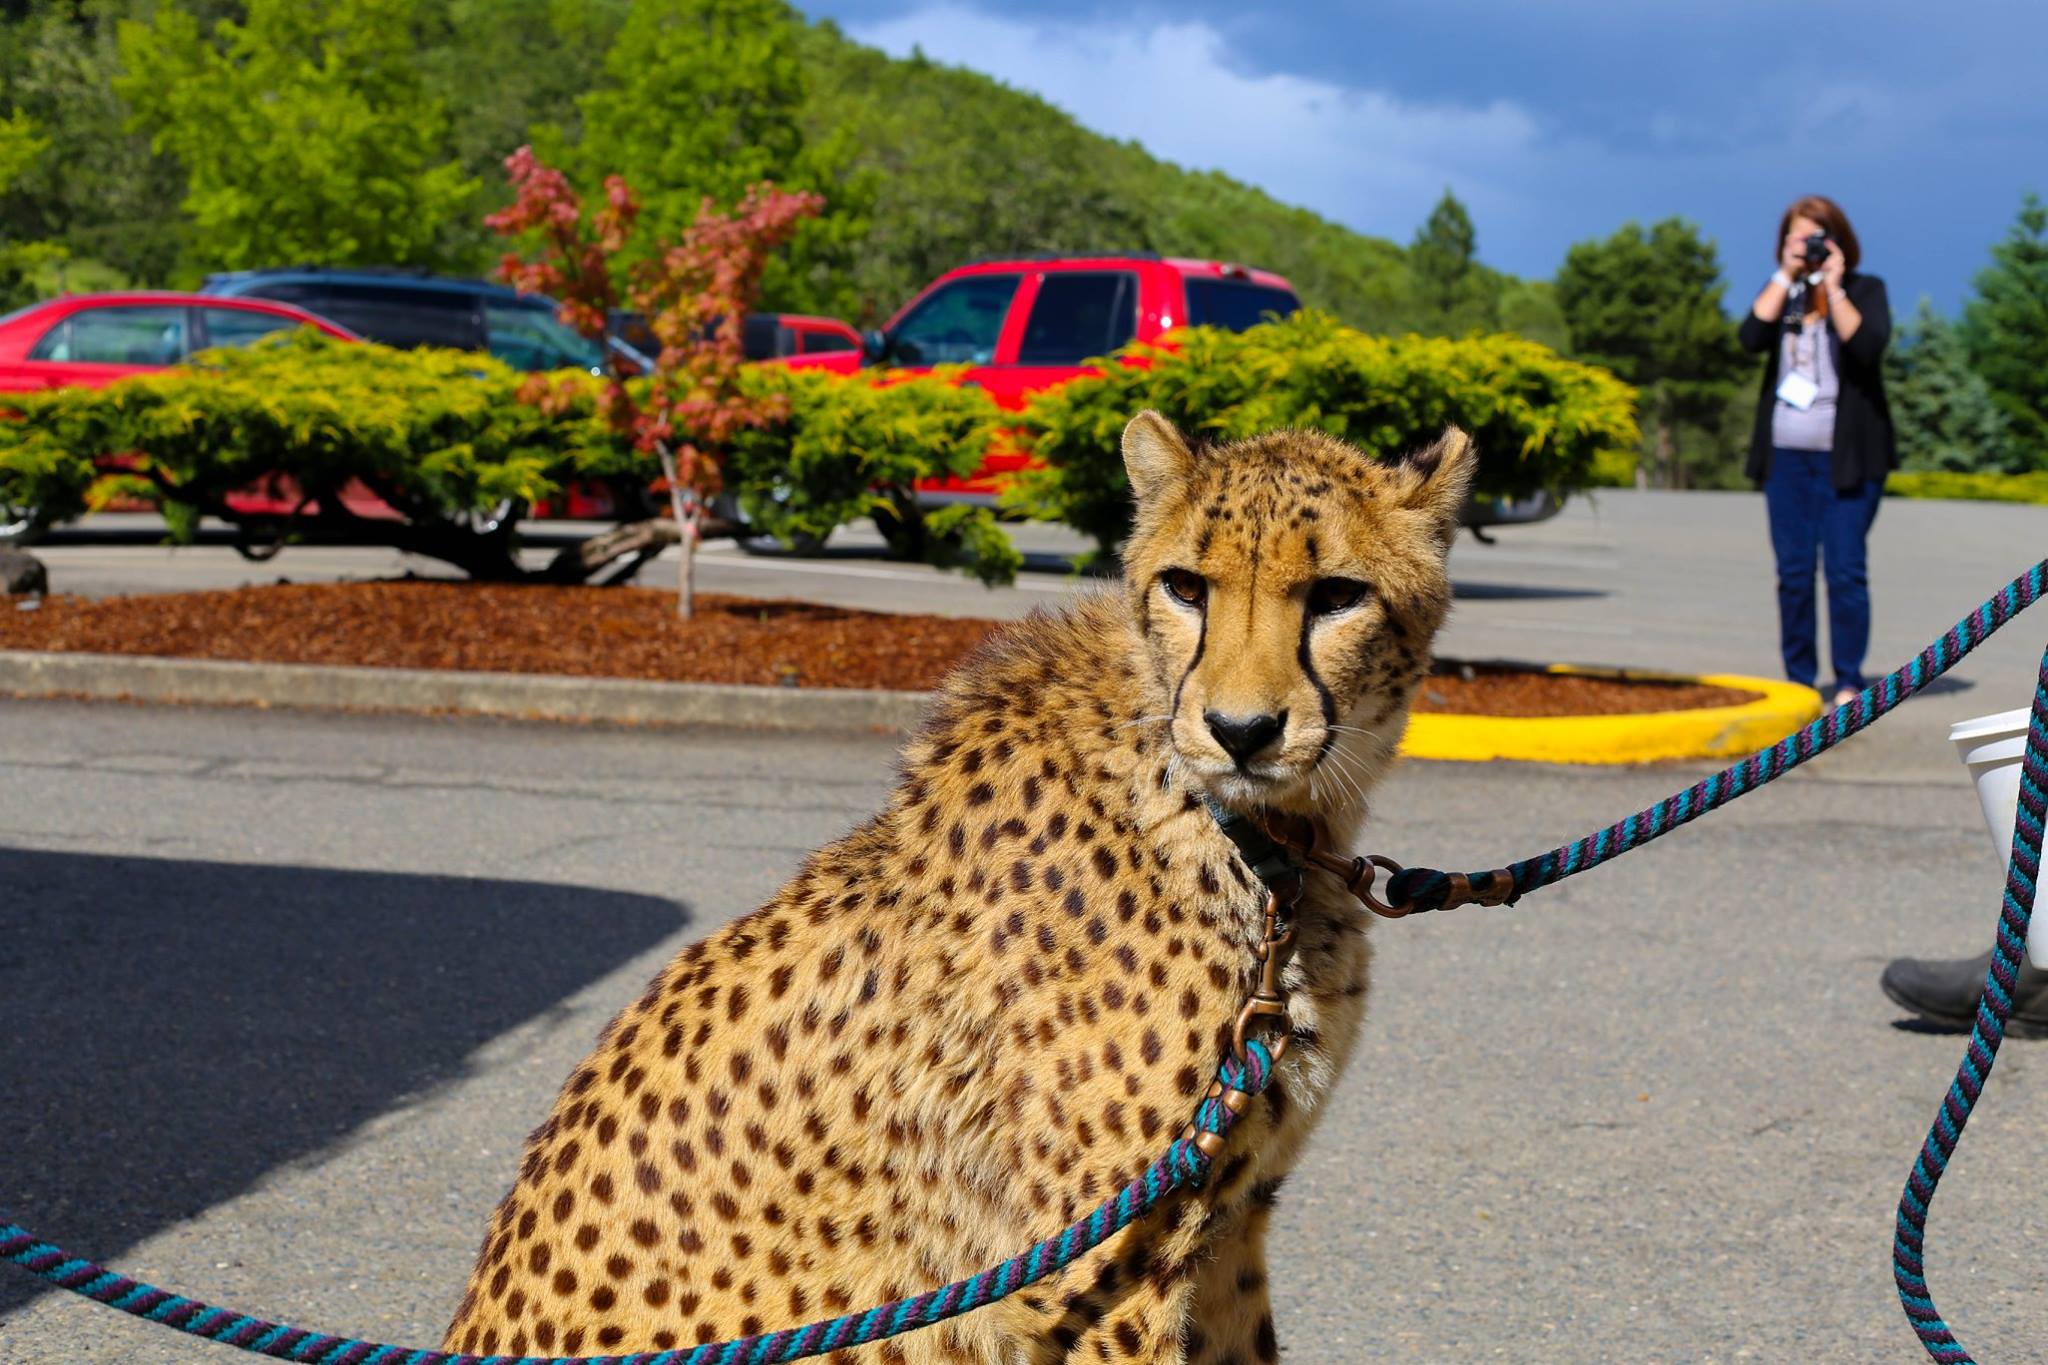 A cheetah look at the camera.